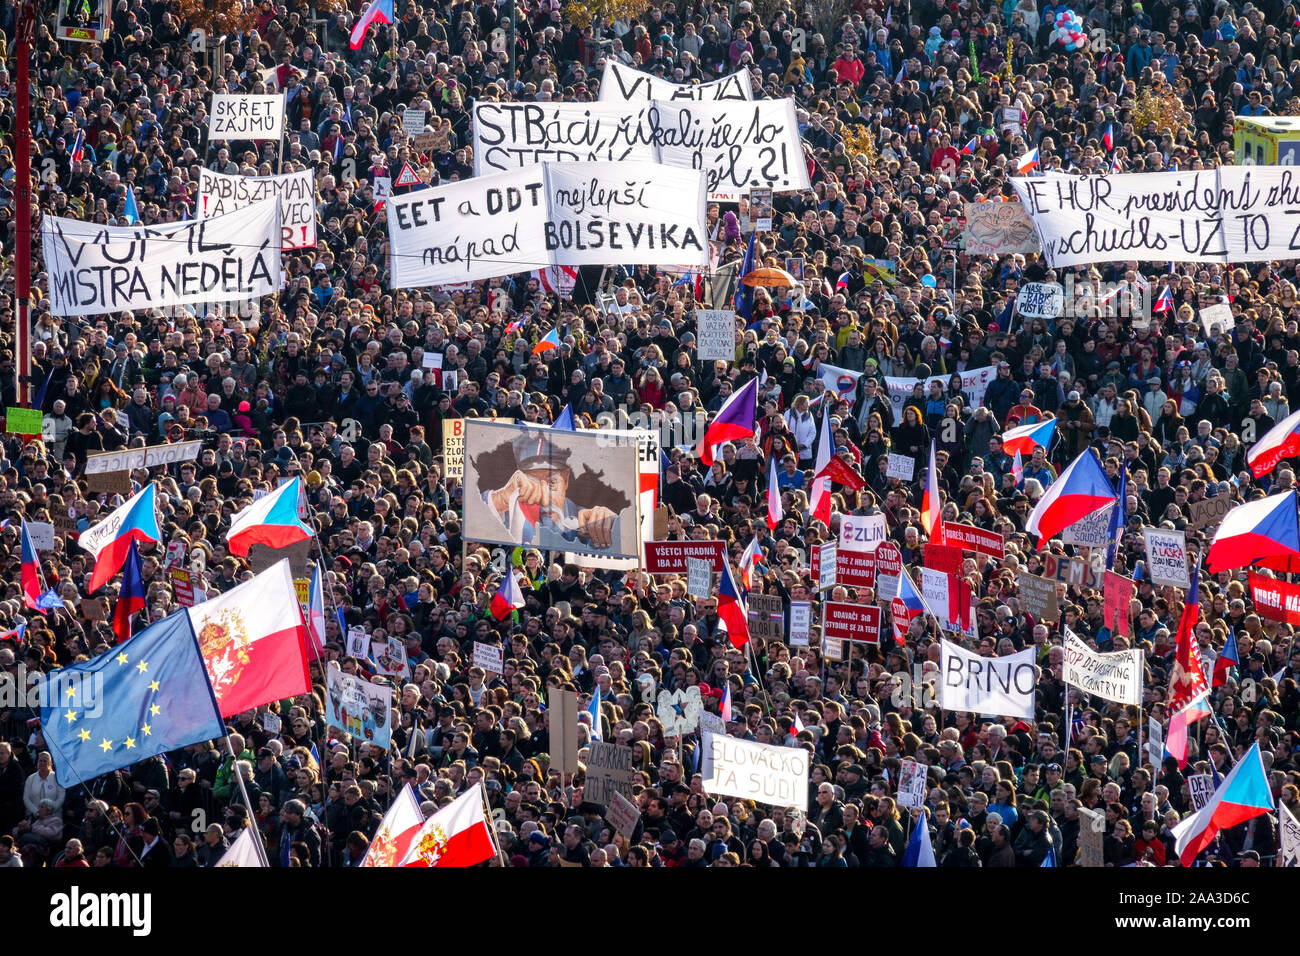 Massendemonstration, Menschen, Transparente, Letna Prag Protest gegen Premierminister Babis Tschechische Republik Stockfoto